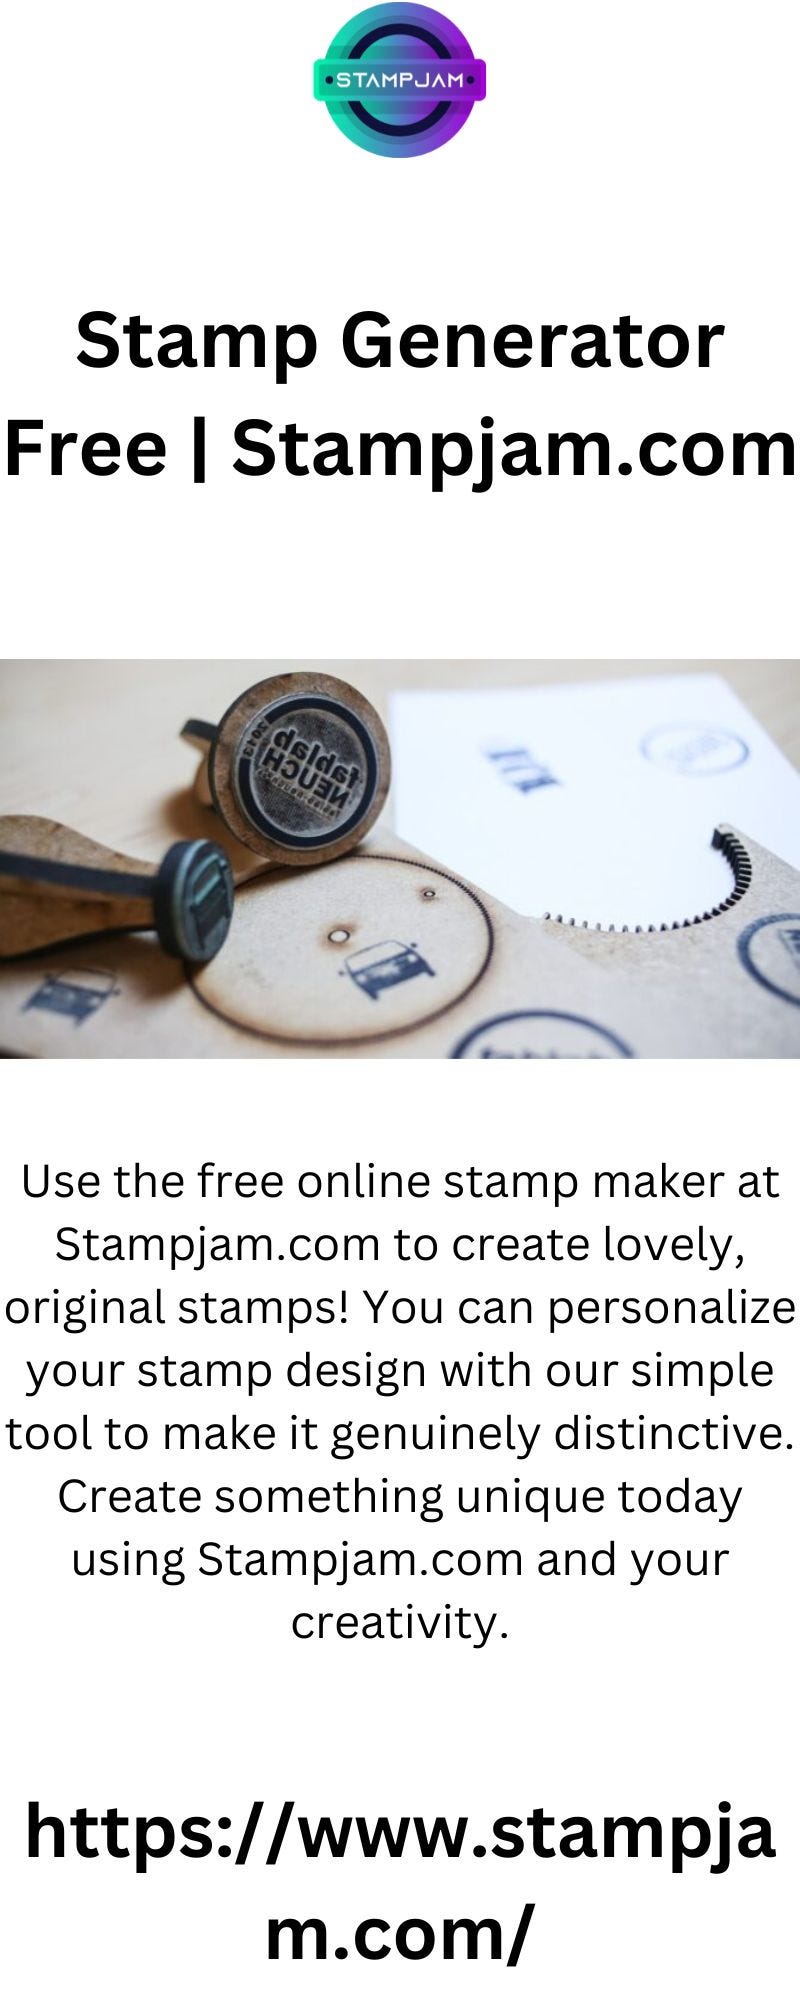 Stamp Generator Free  Stampjam.com - Stampjam - Medium